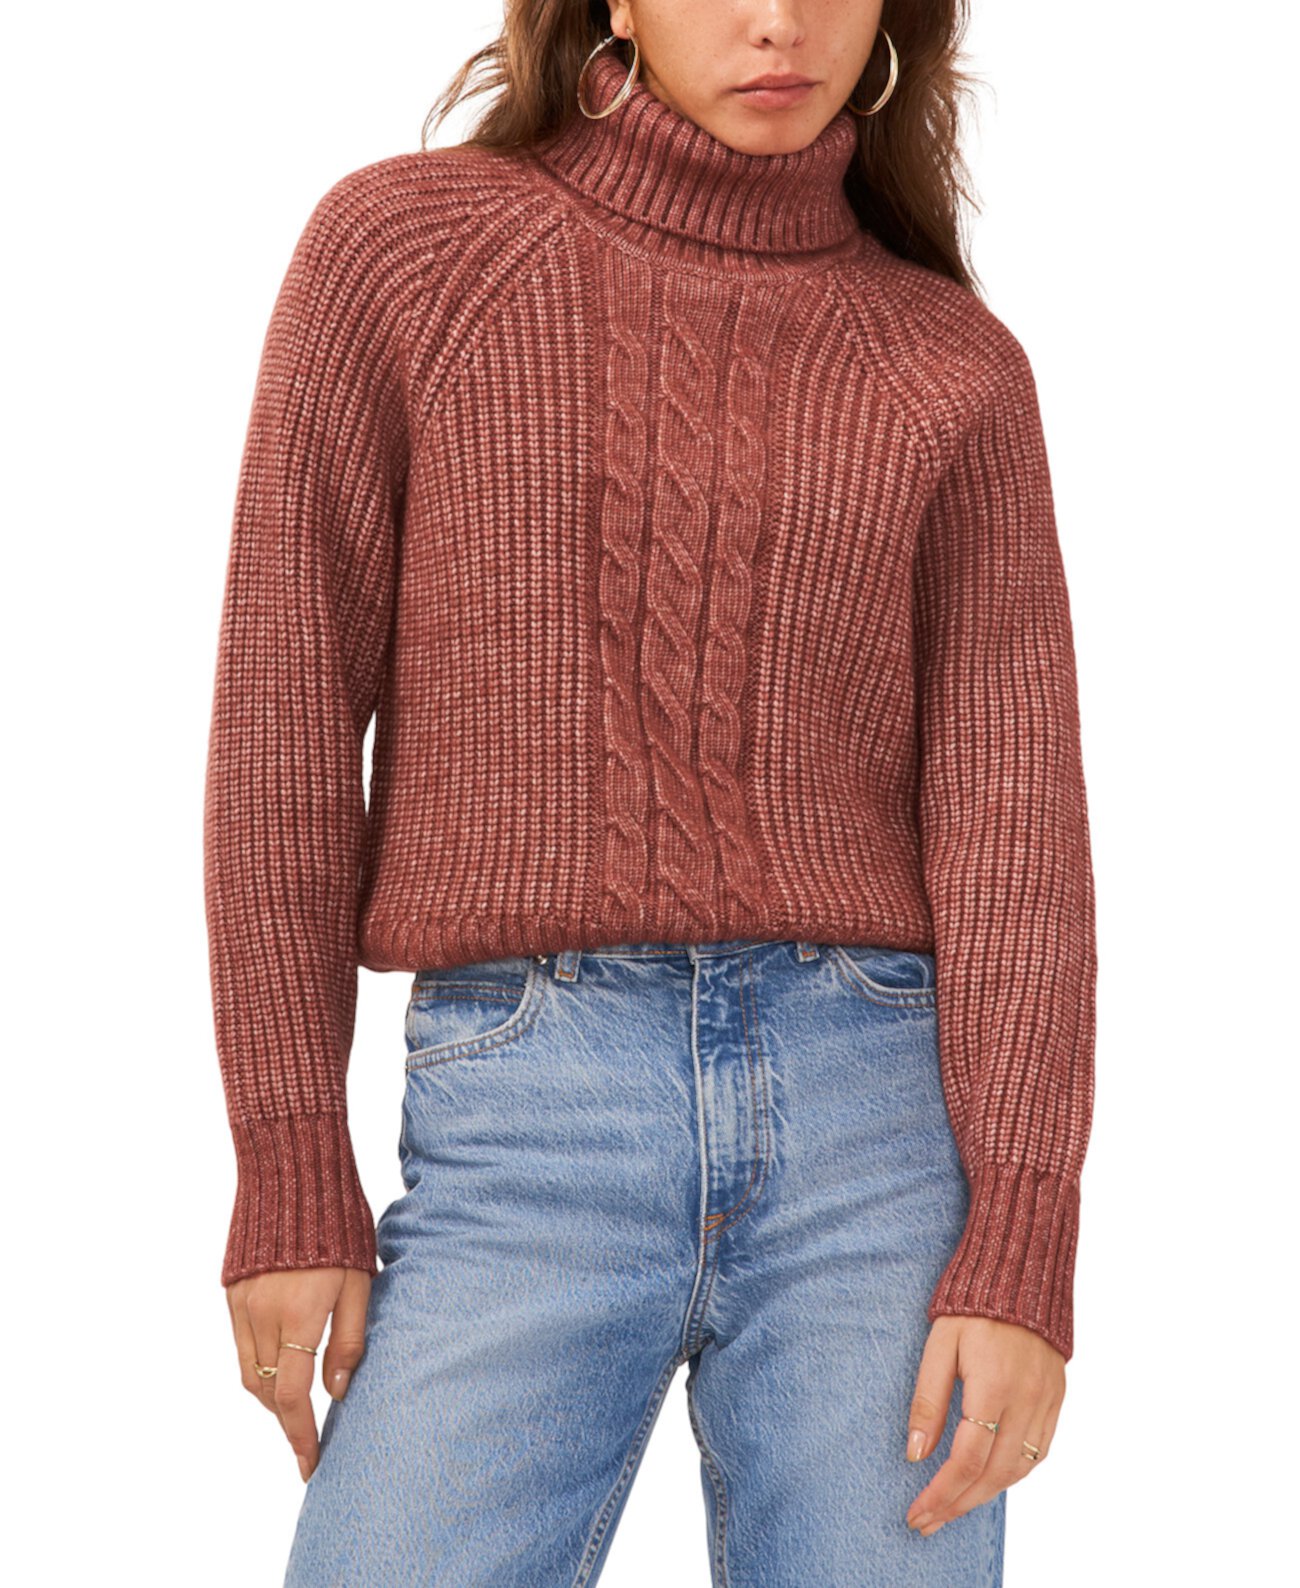 Женский свитер с водолазкой, вырезом на спине и рукавами реглан 1.STATE